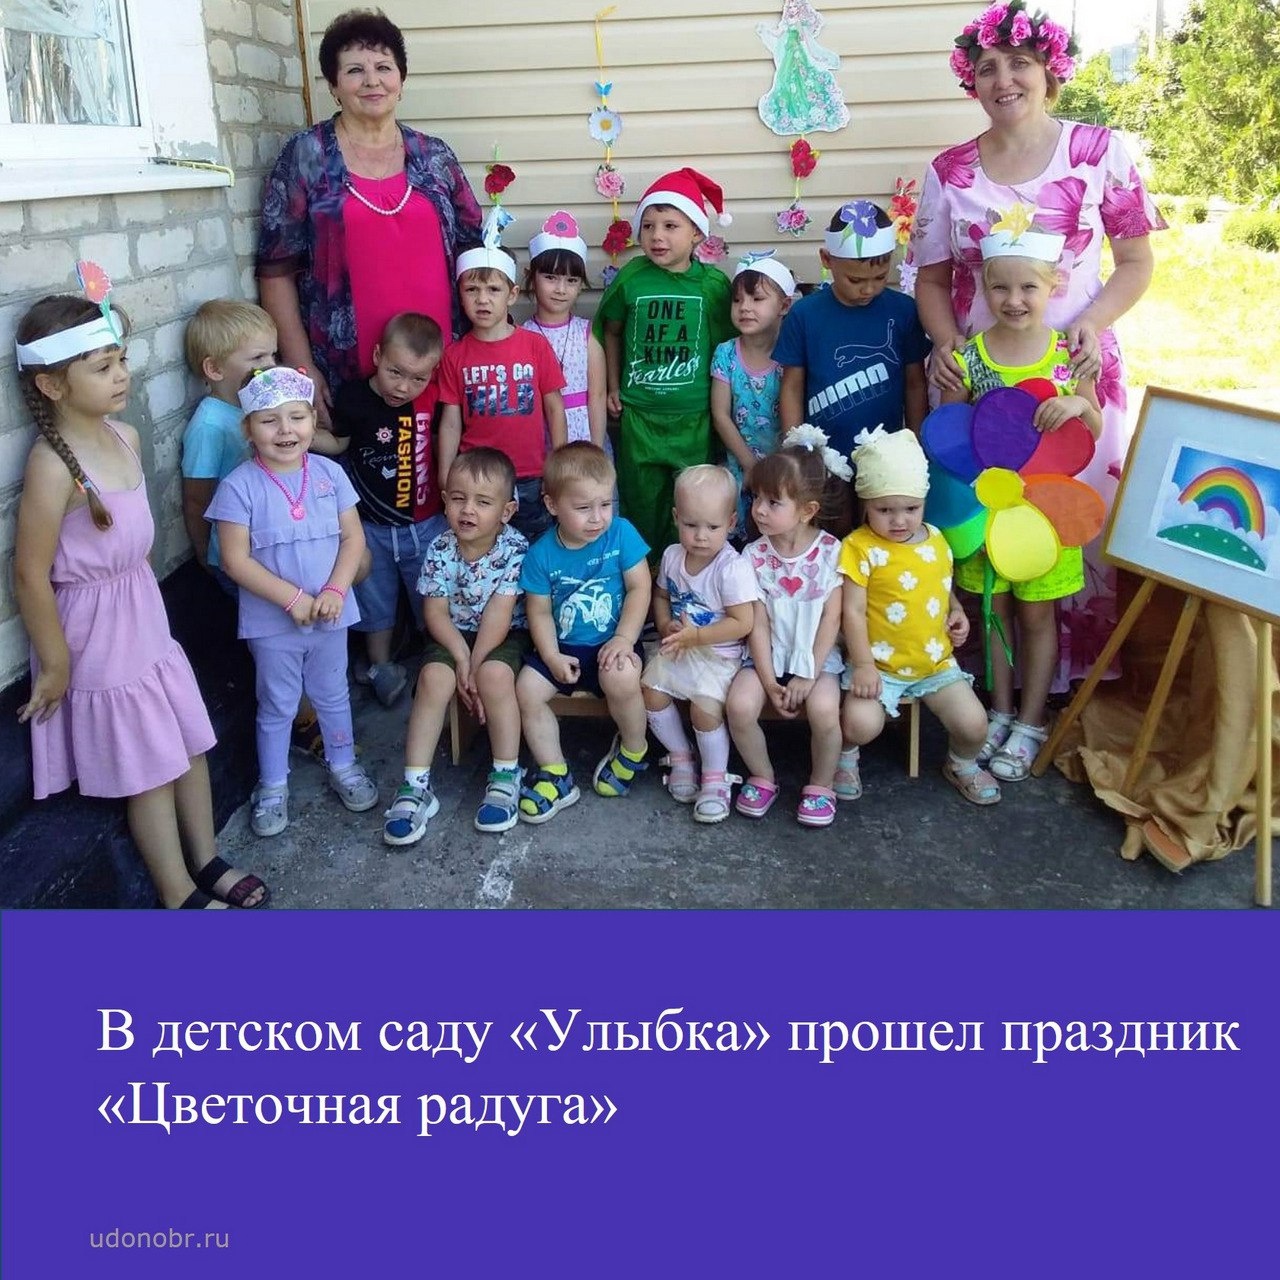 Воспитанники детского сада «Улыбка» приняли участие в празднике «Цветочная радуга»